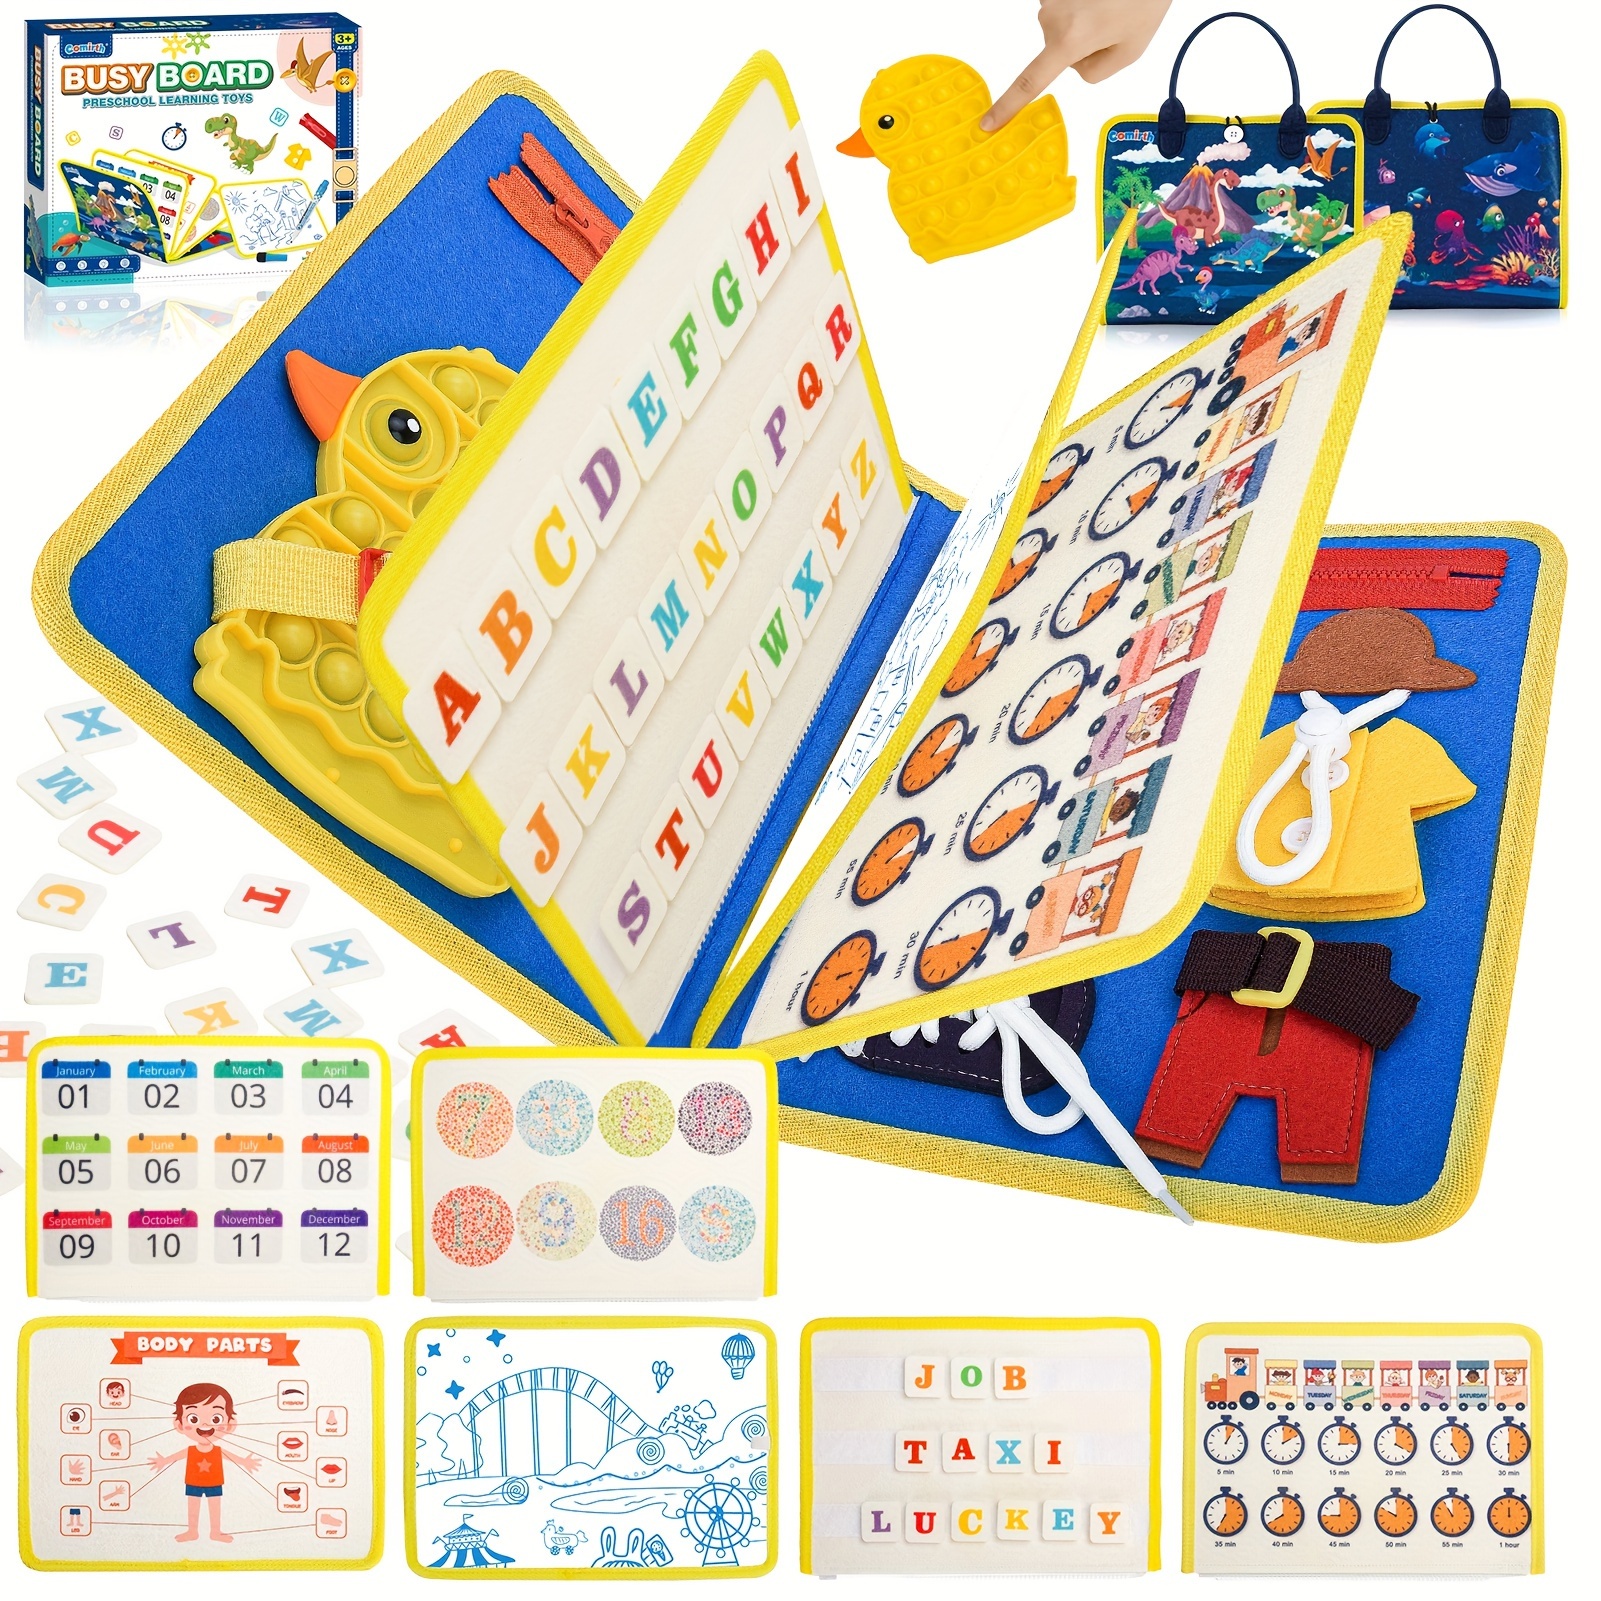 Montessori Juguetes para niños de 2 años – Tablero ocupado